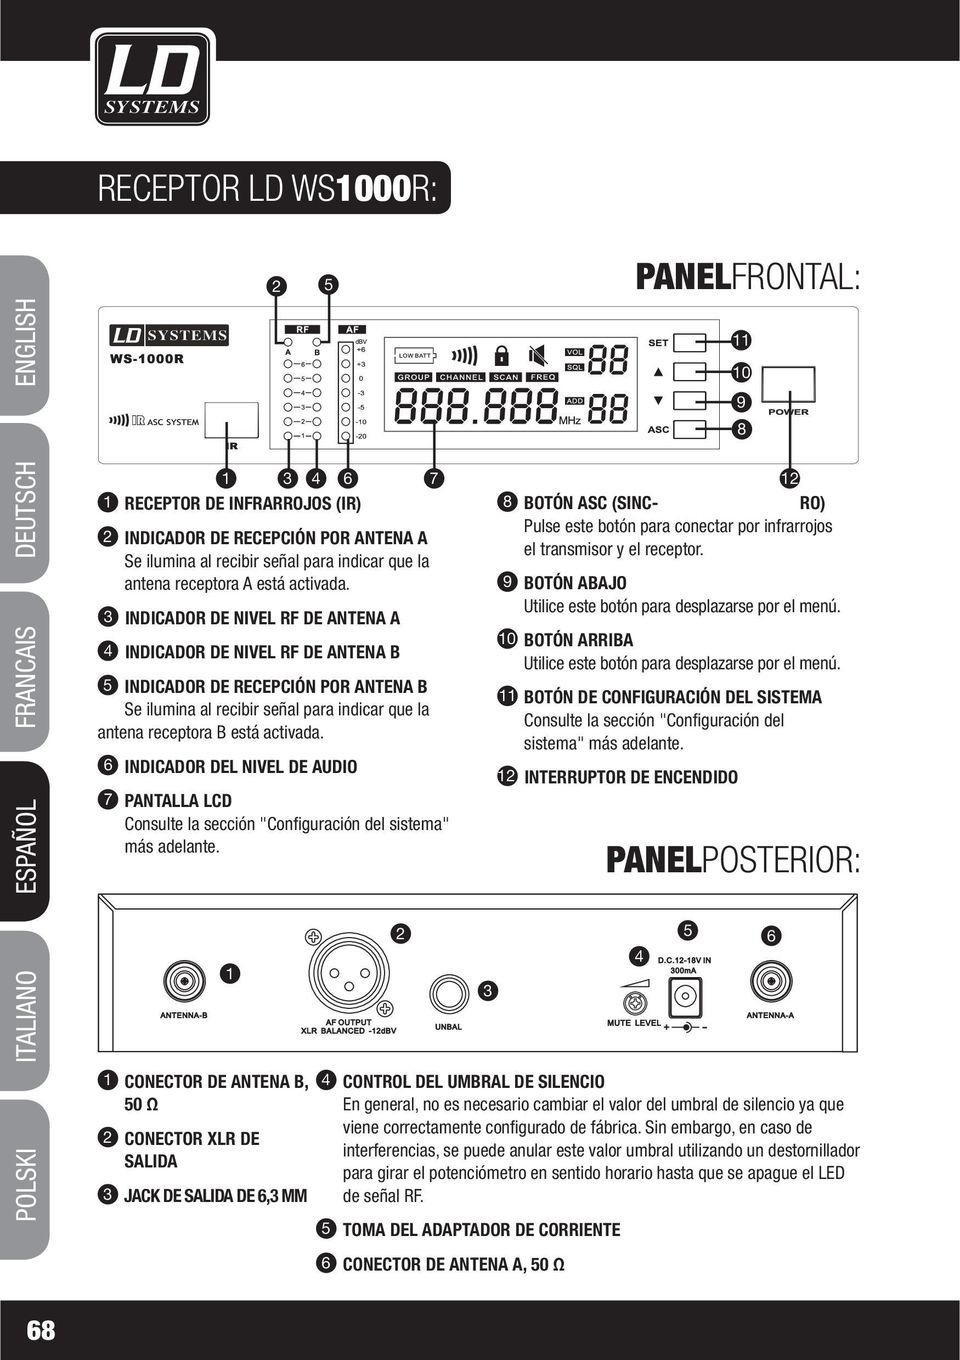 6 INDICADOR DEL NIVEL DE AUDIO 7 PANTALLA LCD Consulte la sección "Configuración del sistema" más adelante.